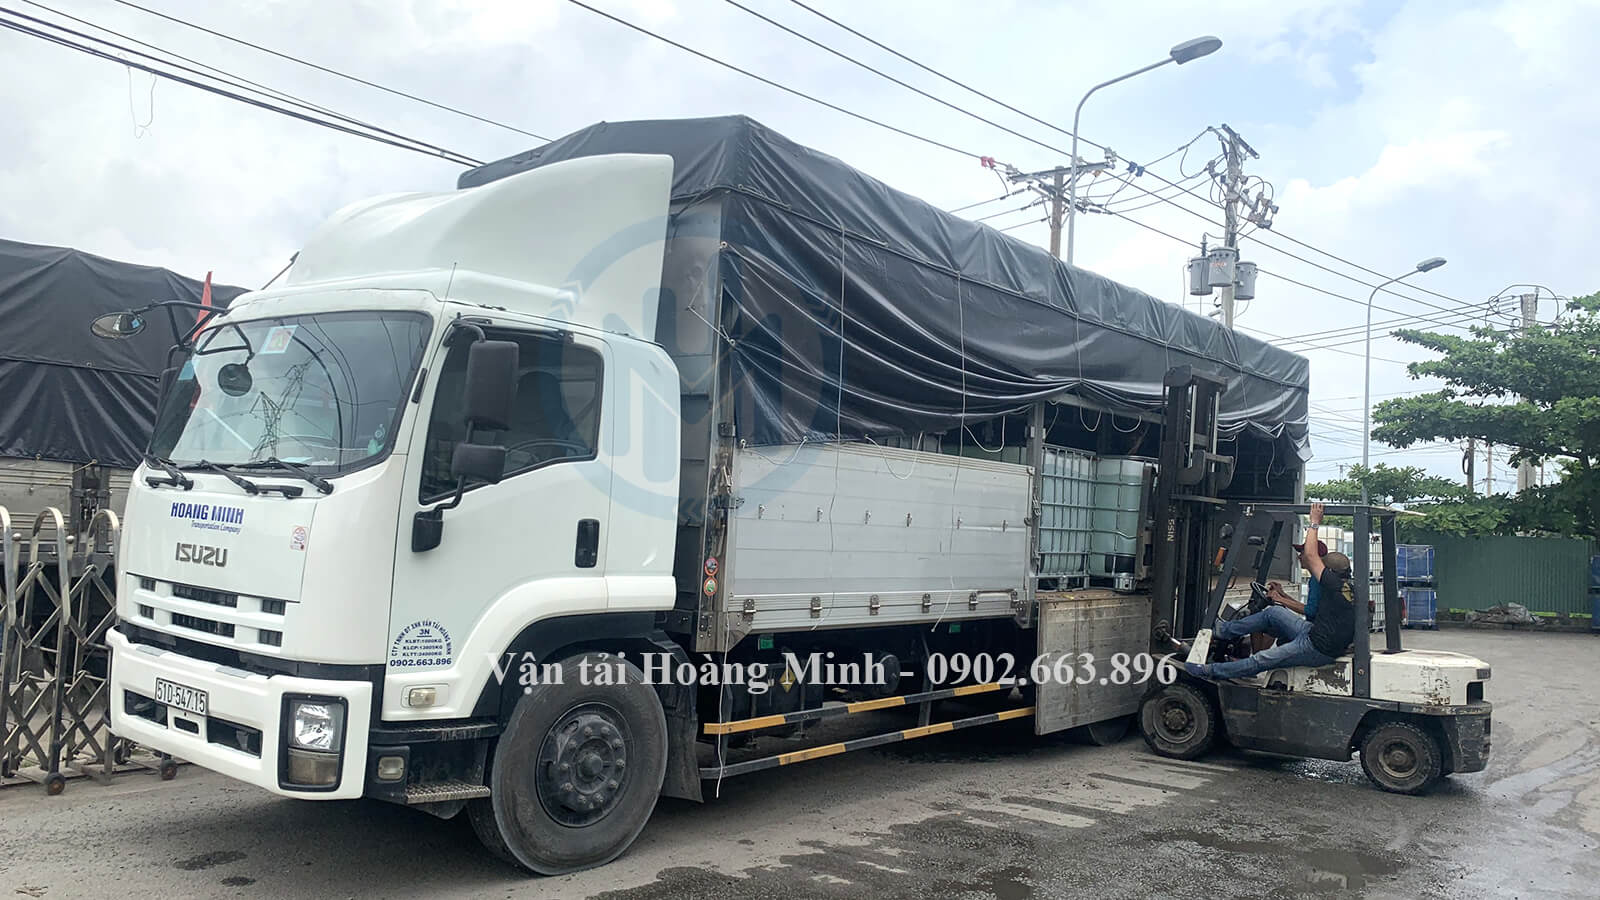 Giới thiệu dịch vụ cho thuê xe tải chở hàng huyện Nhơn Trạch